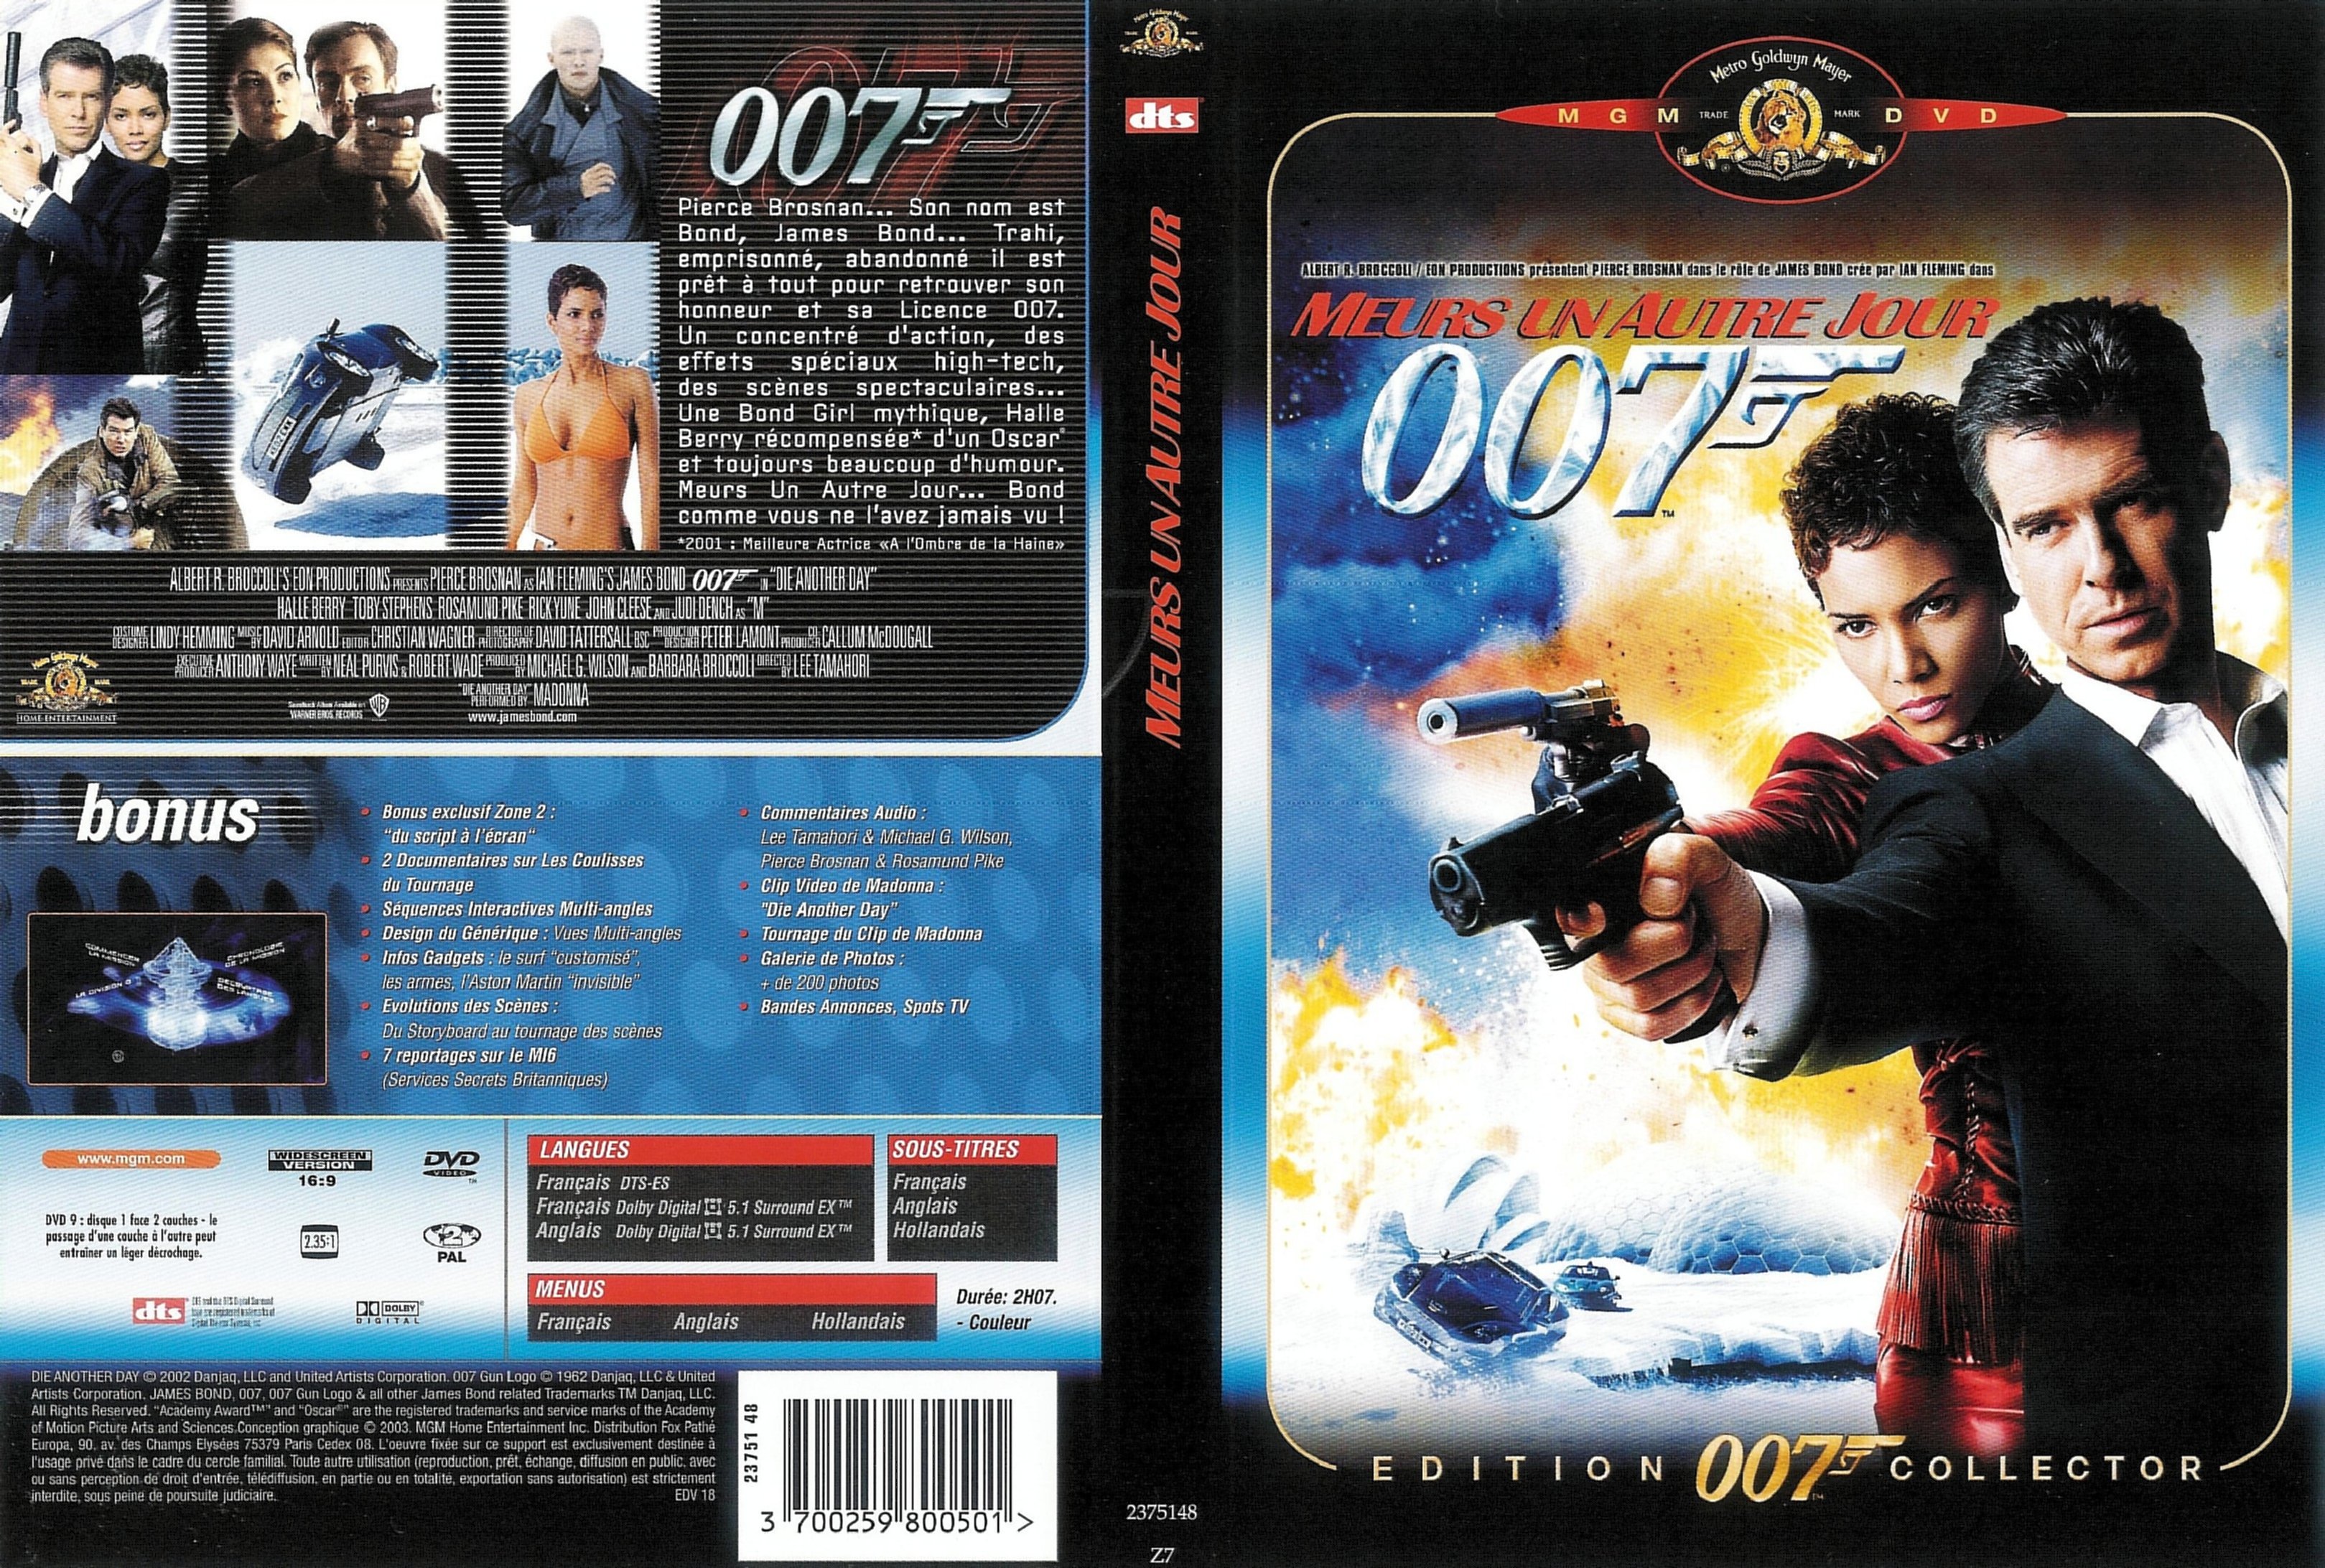 Jaquette DVD James Bond 007 Meurs un autre jour